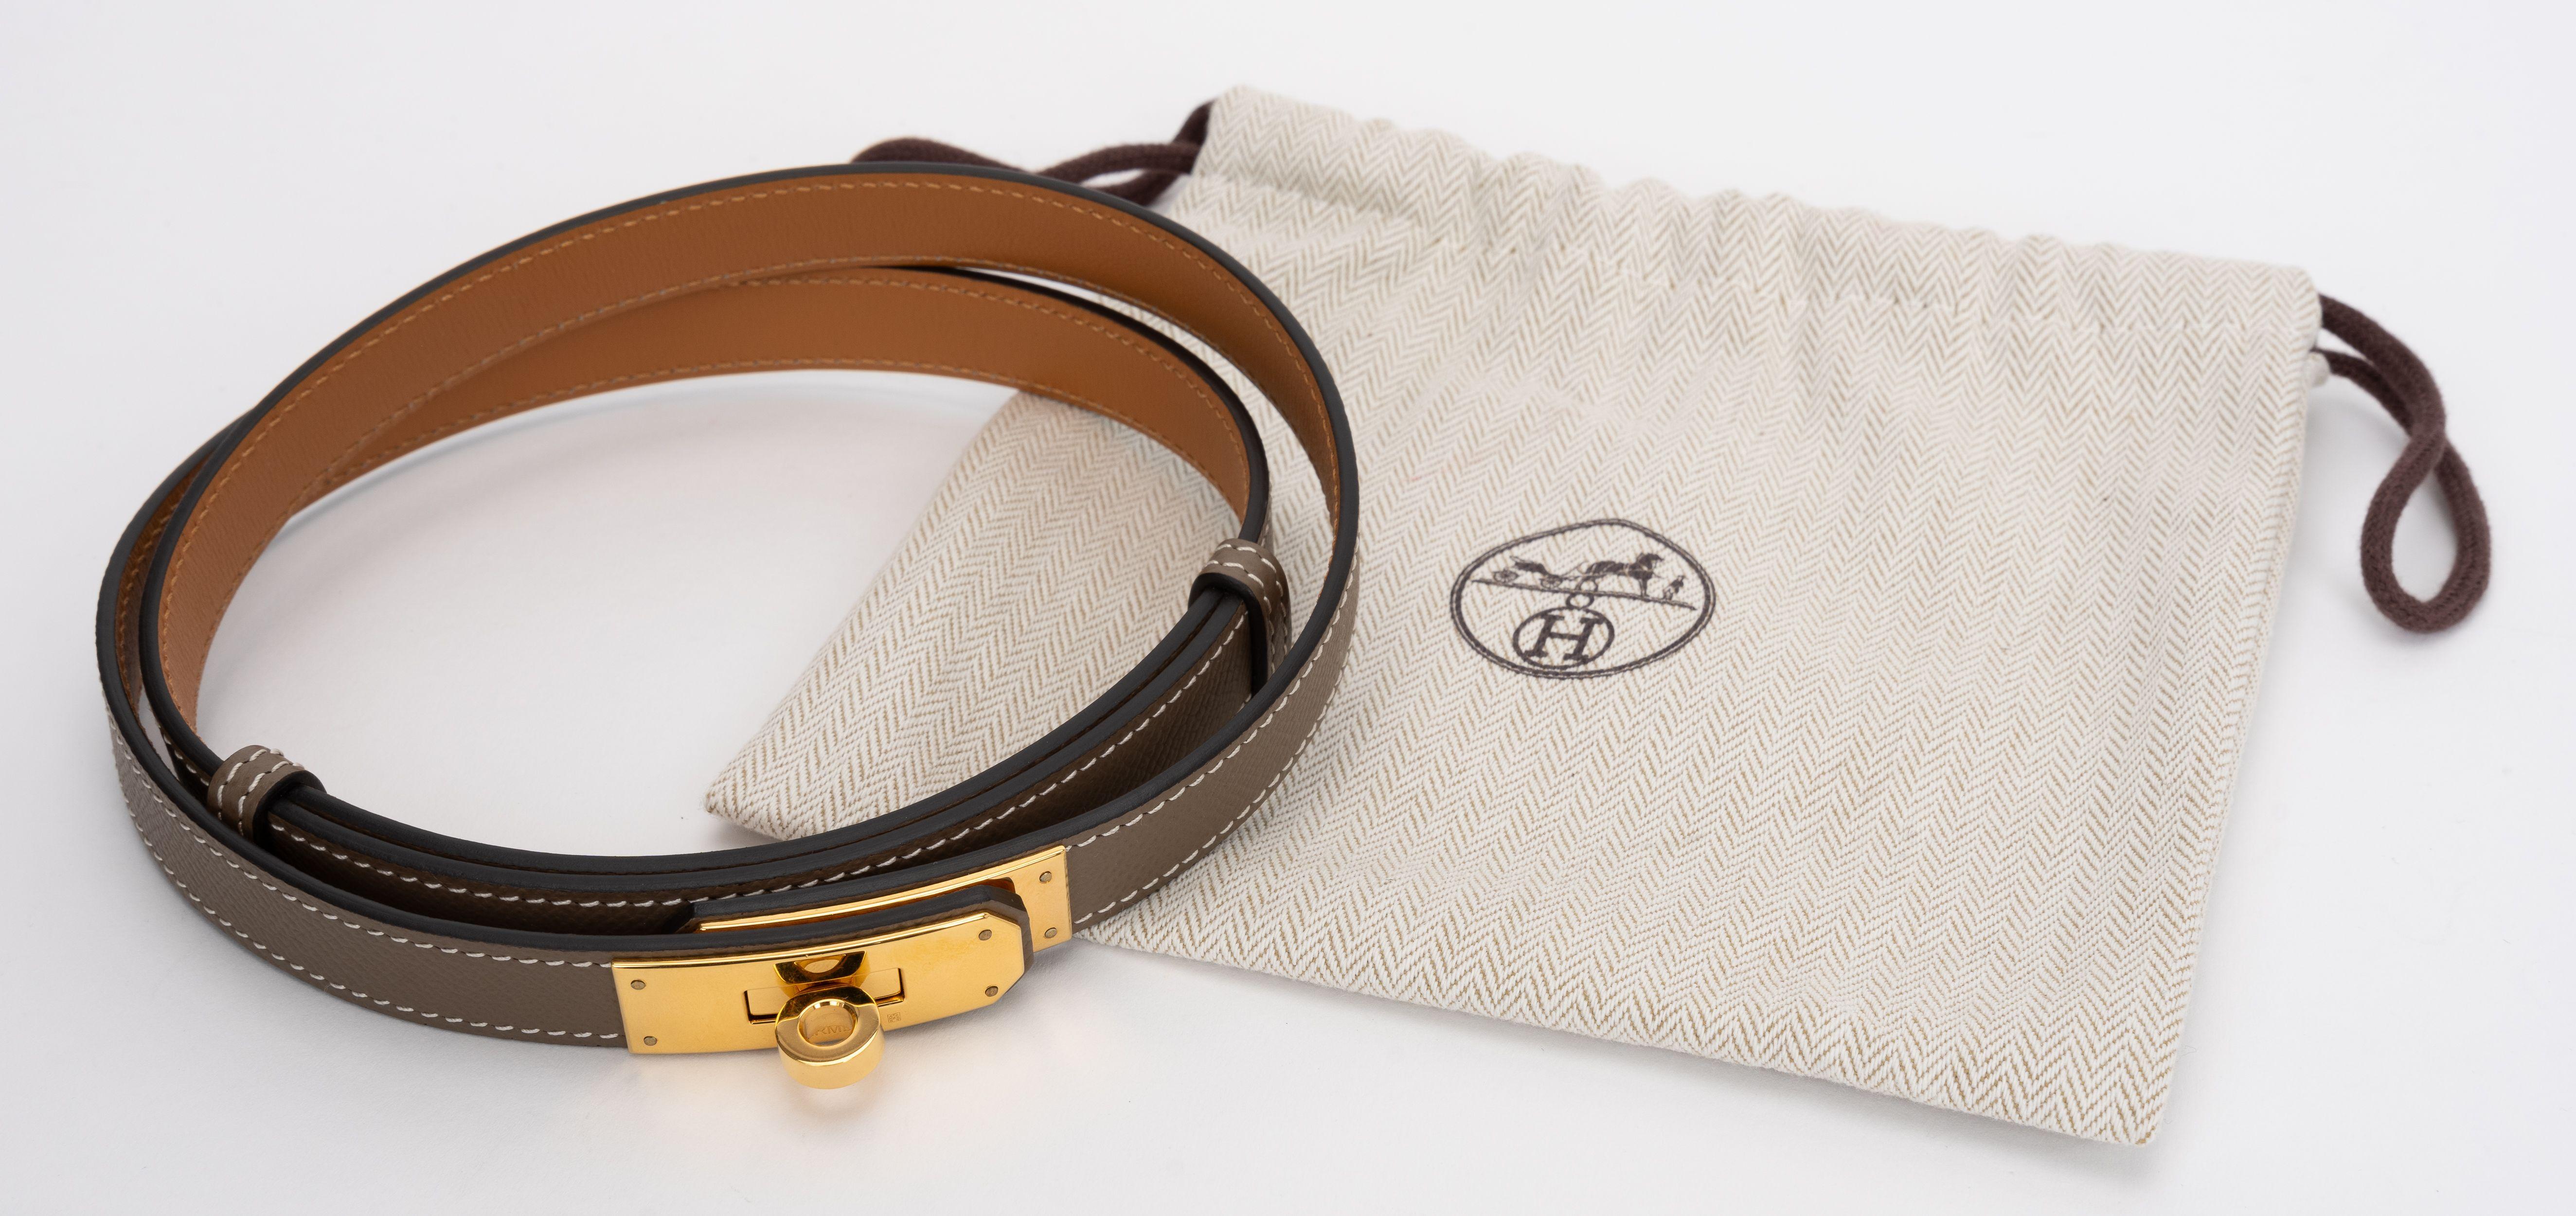 Der Hermes Epsom Kelly Belt besteht aus Epsom-Leder mit einem goldenen Kelly-Drehverschluss auf der Vorderseite. Der Gürtel kann sowohl in der Taille als auch tief in der Taille getragen werden. Breite: .71